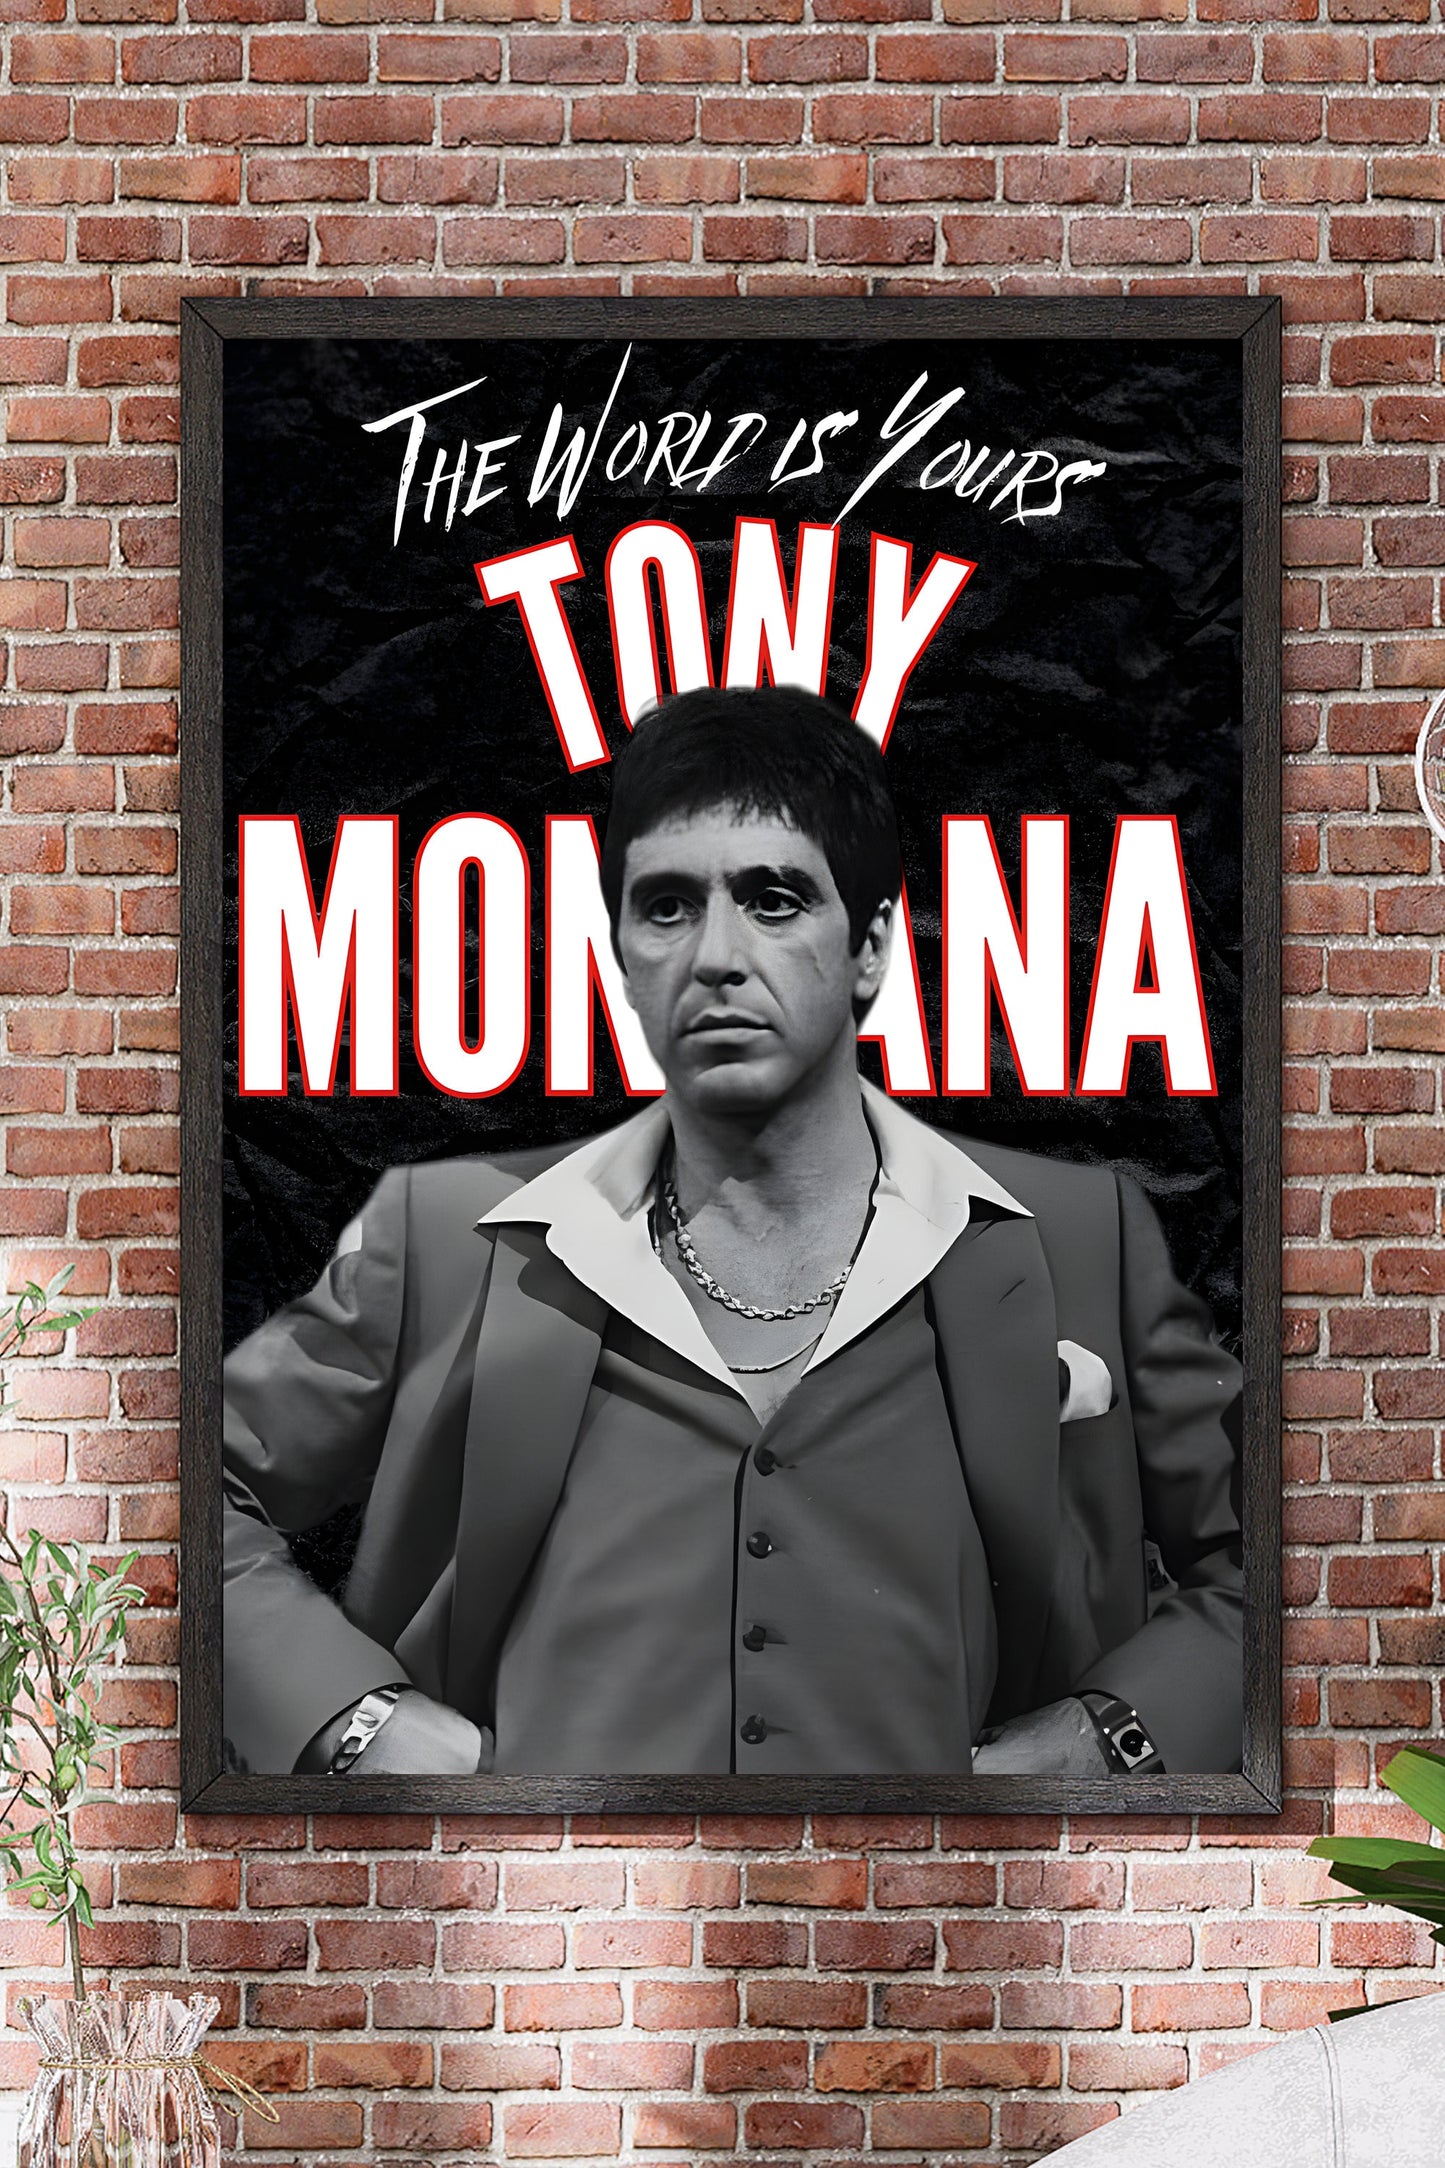 Poster Tony Montana Al Pacino